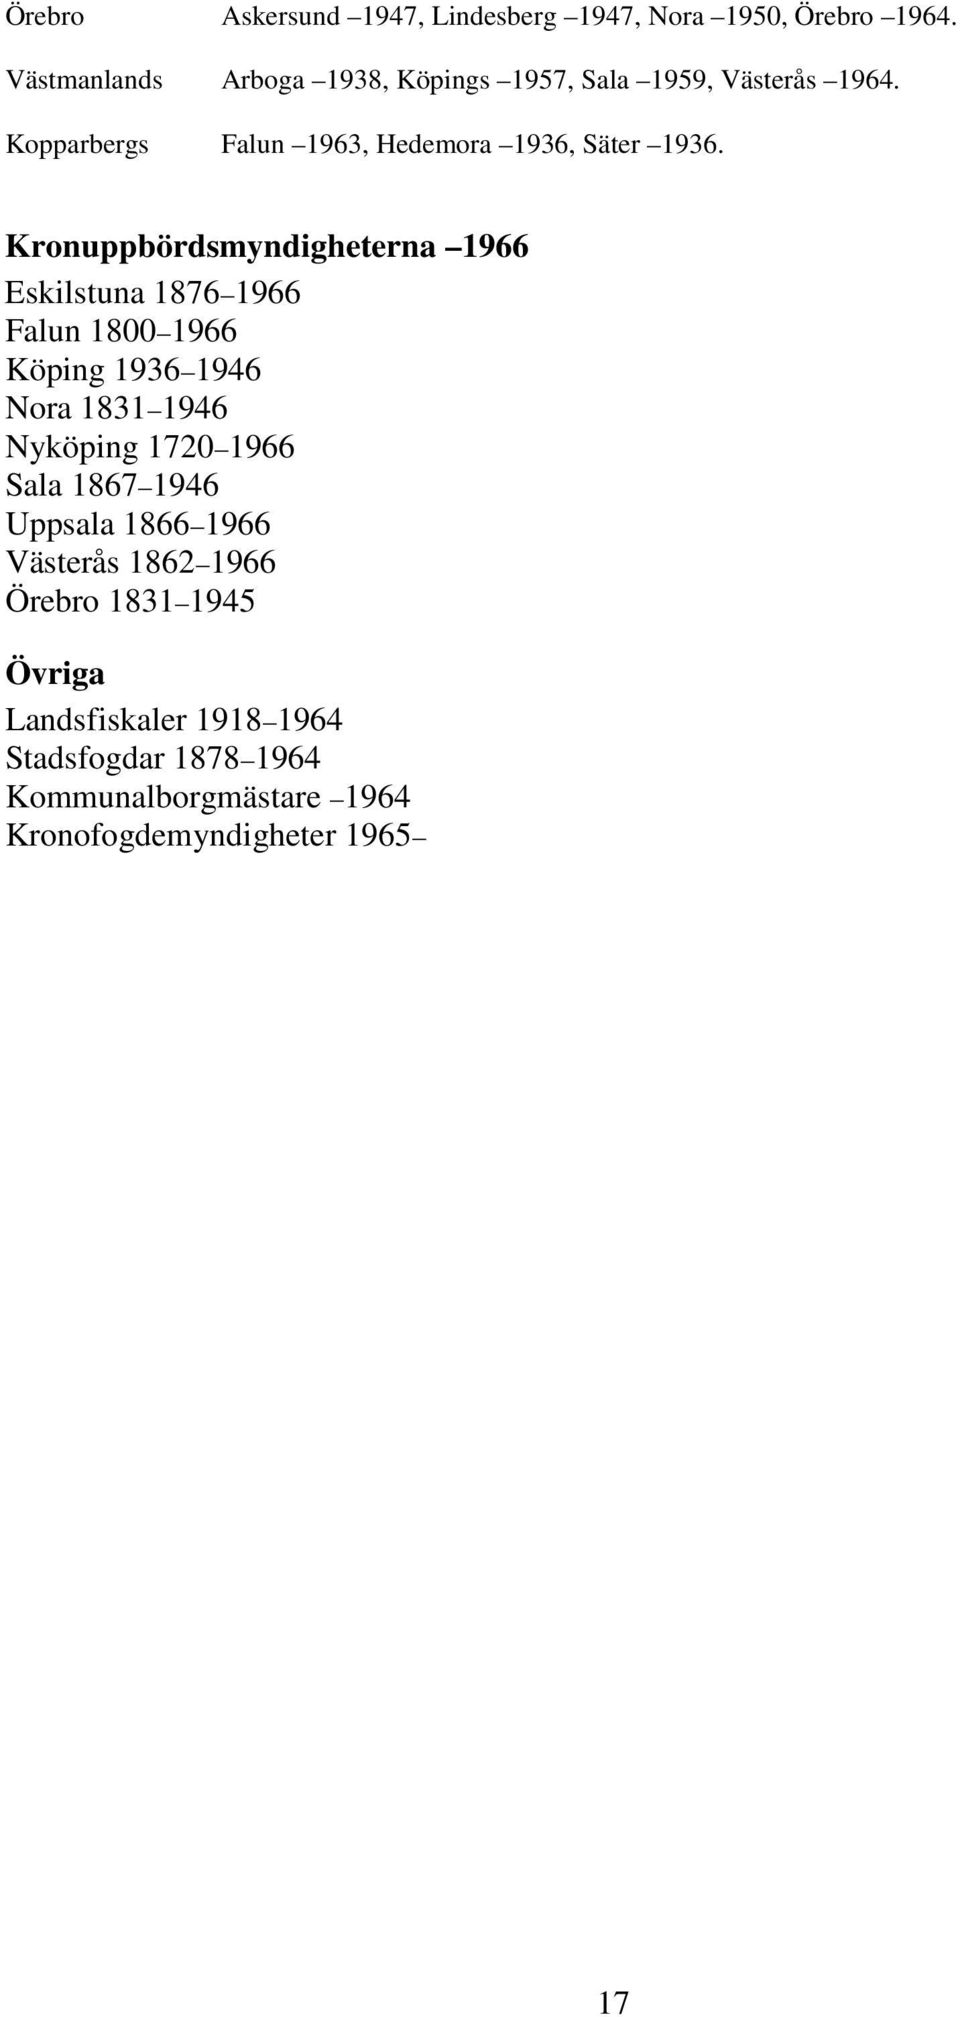 Kronuppbördsmyndigheterna 1966 Eskilstuna 1876 1966 Falun 1800 1966 Köping 1936 1946 Nora 1831 1946 Nyköping 1720 1966